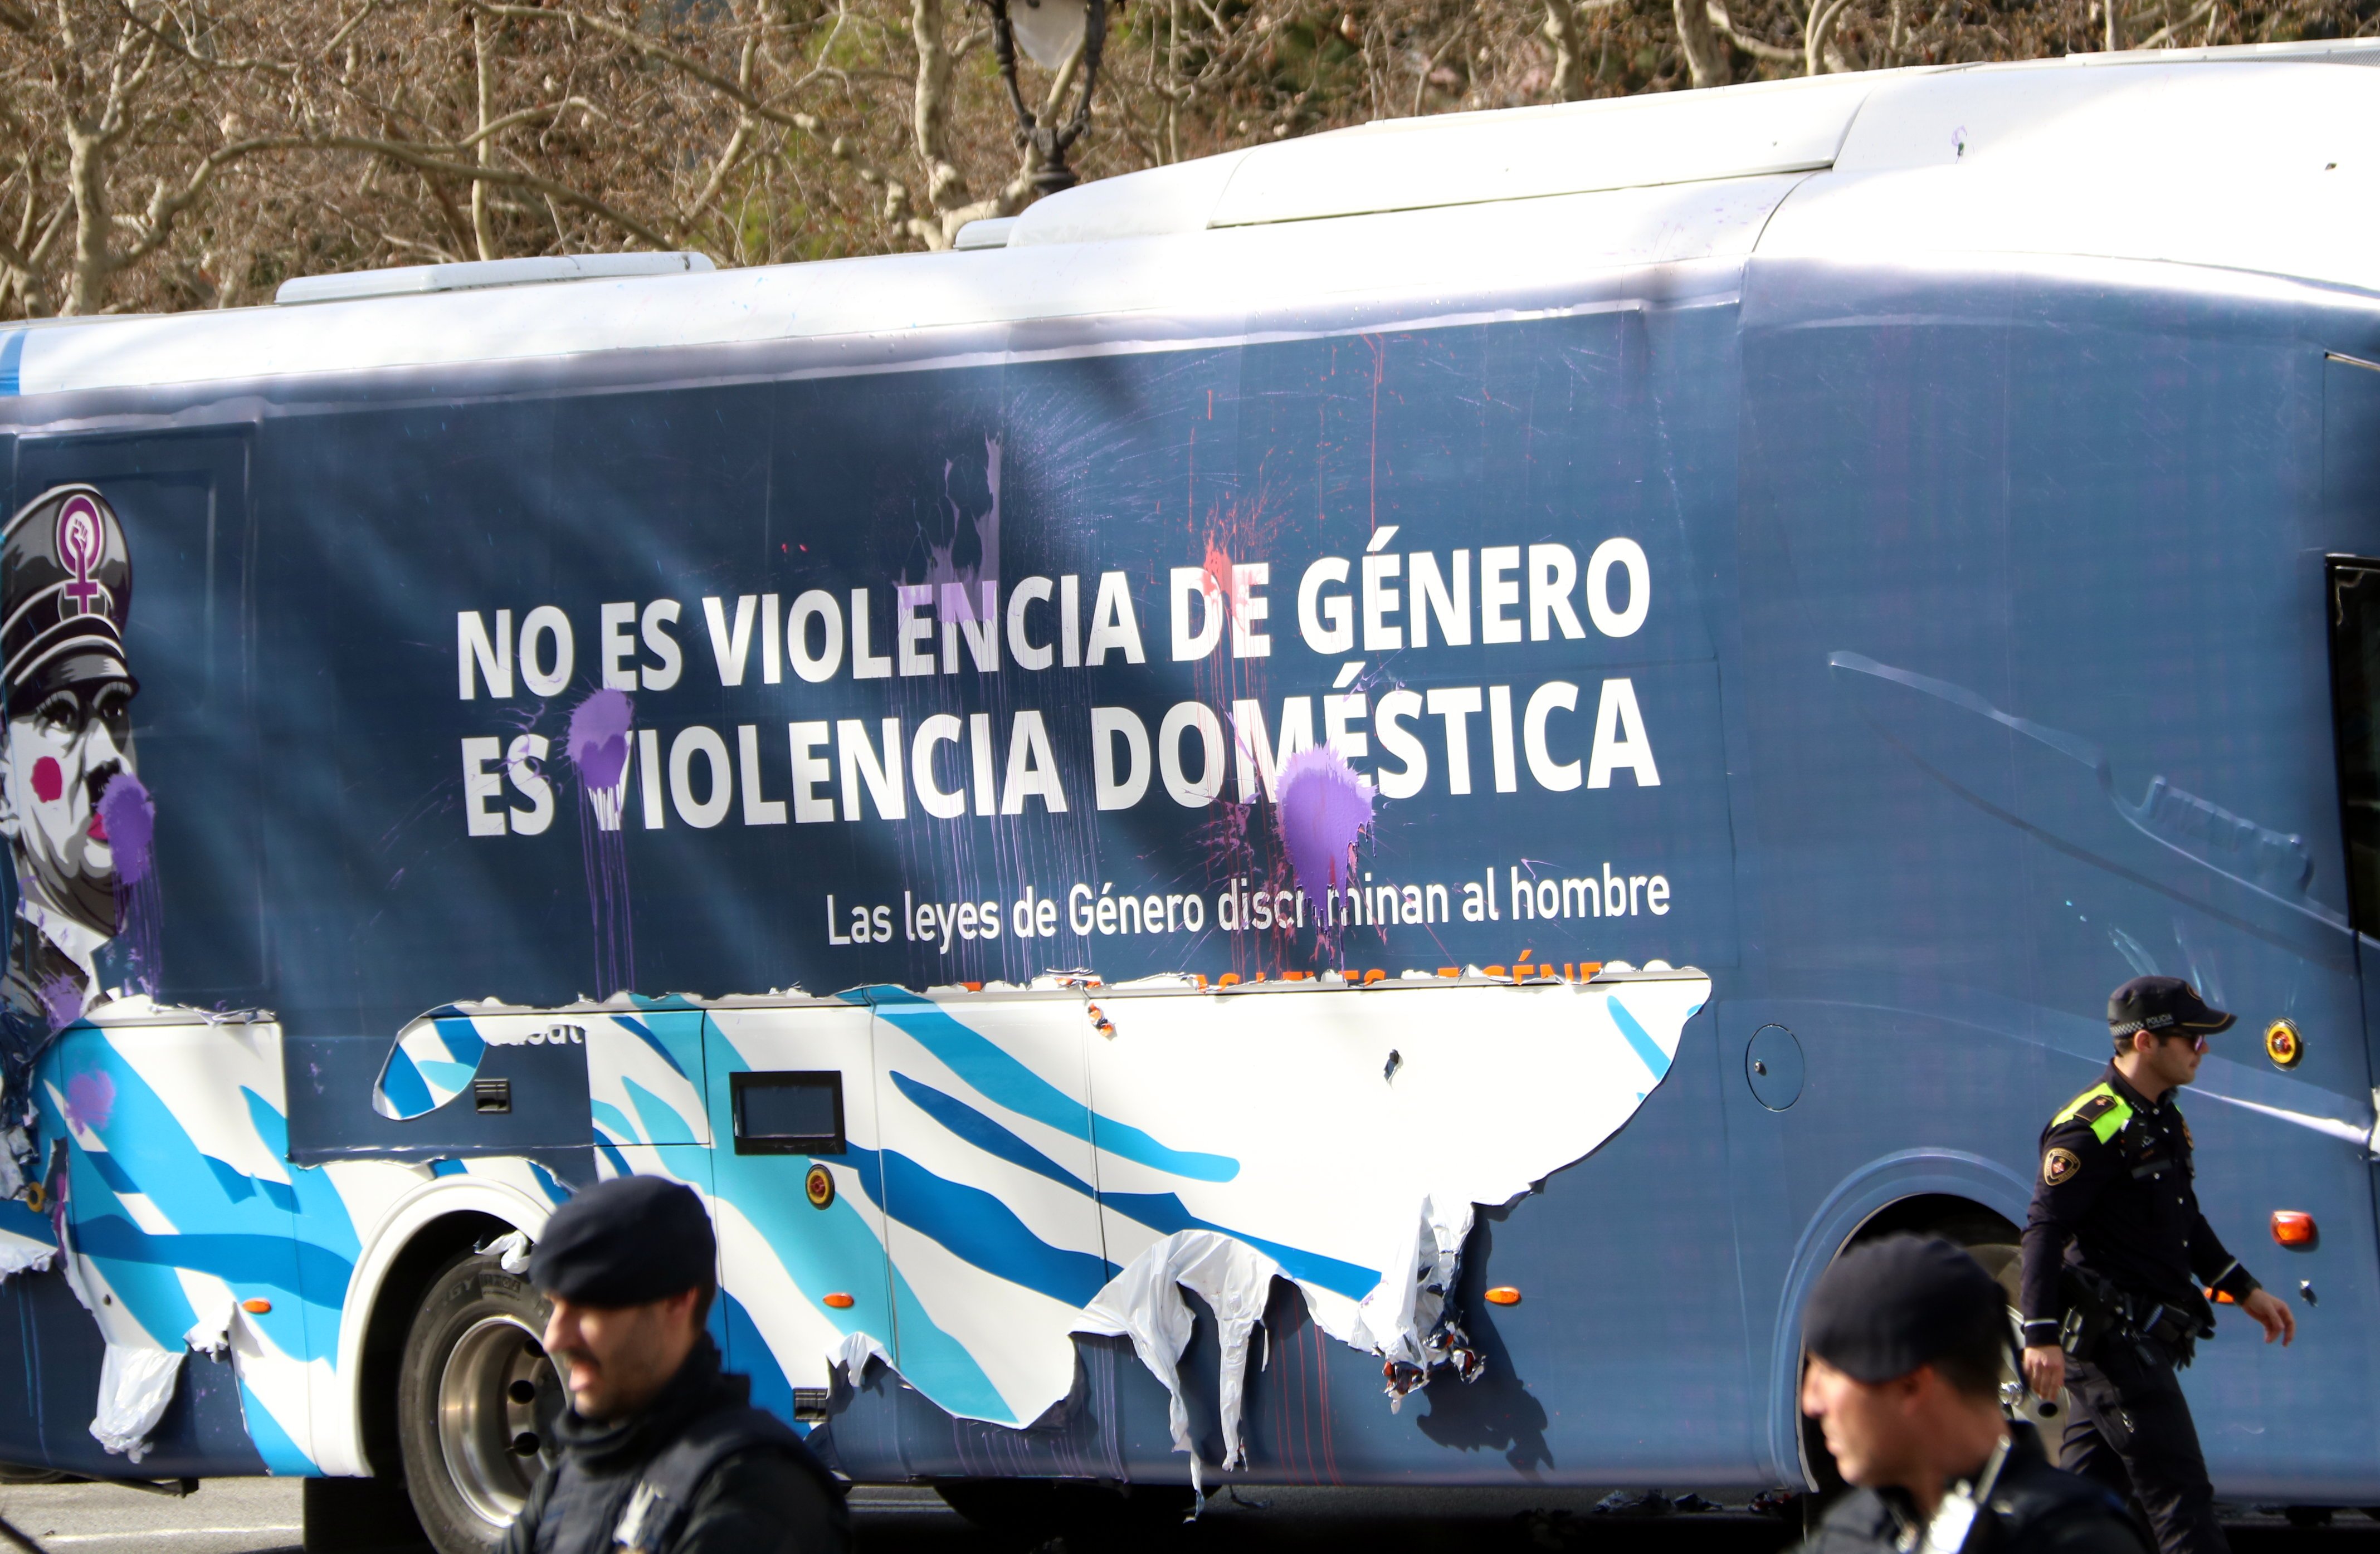 Hazte Oír hi torna: faran circular autobusos per la vaga feminista